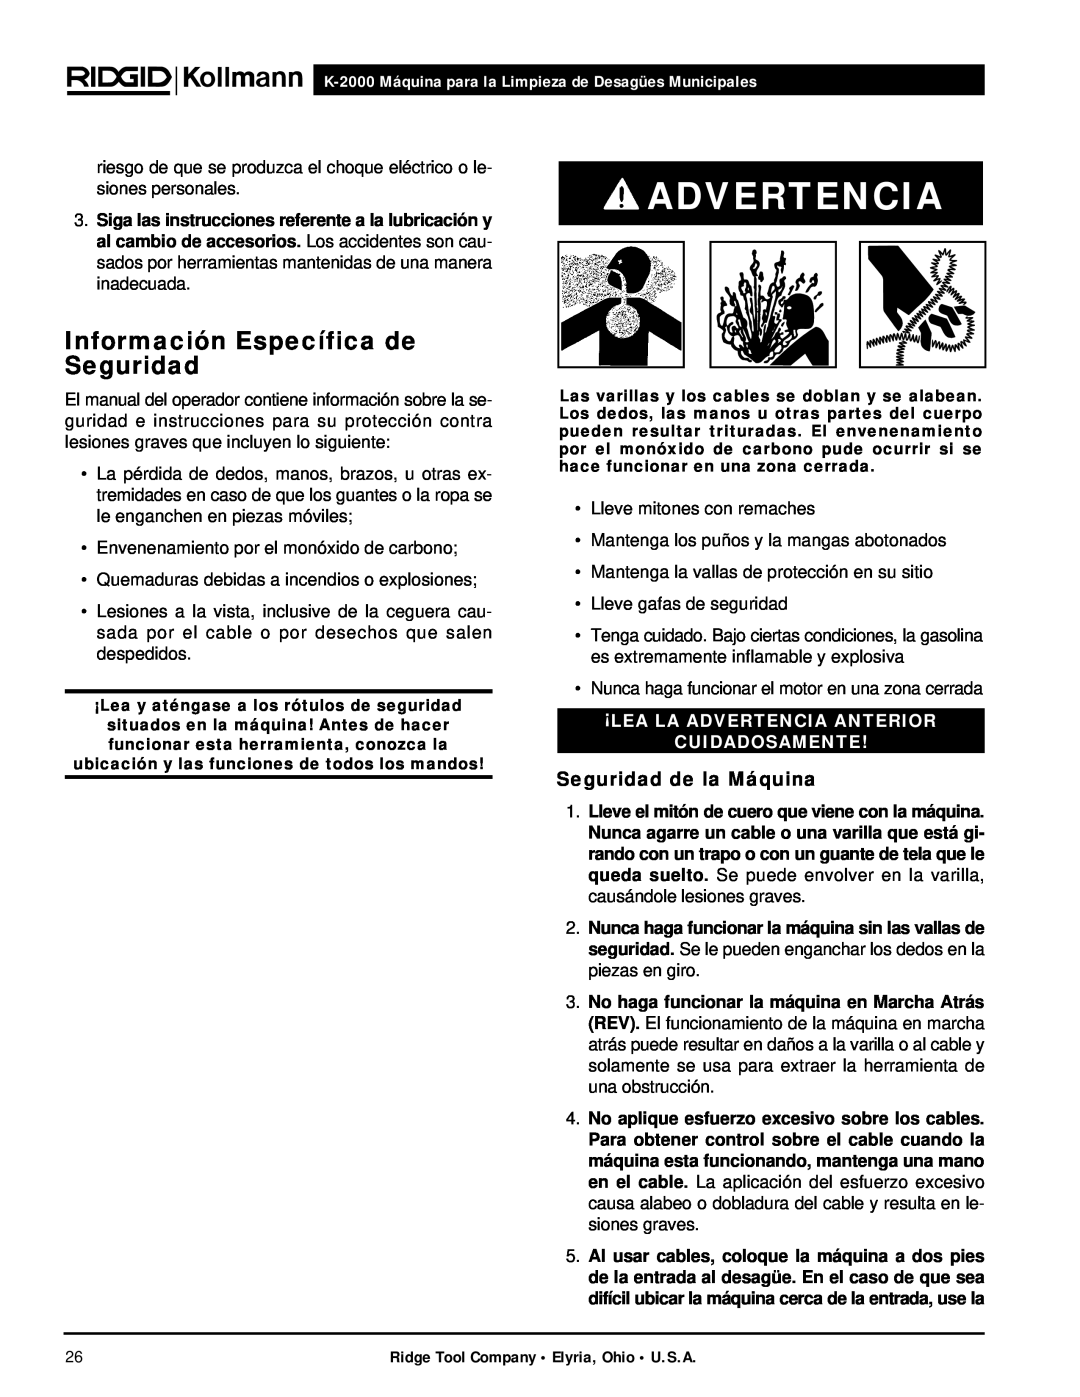 RIDGID K-2000 manual Advertencia, Información Específica de Seguridad, Seguridad de la Máquina 